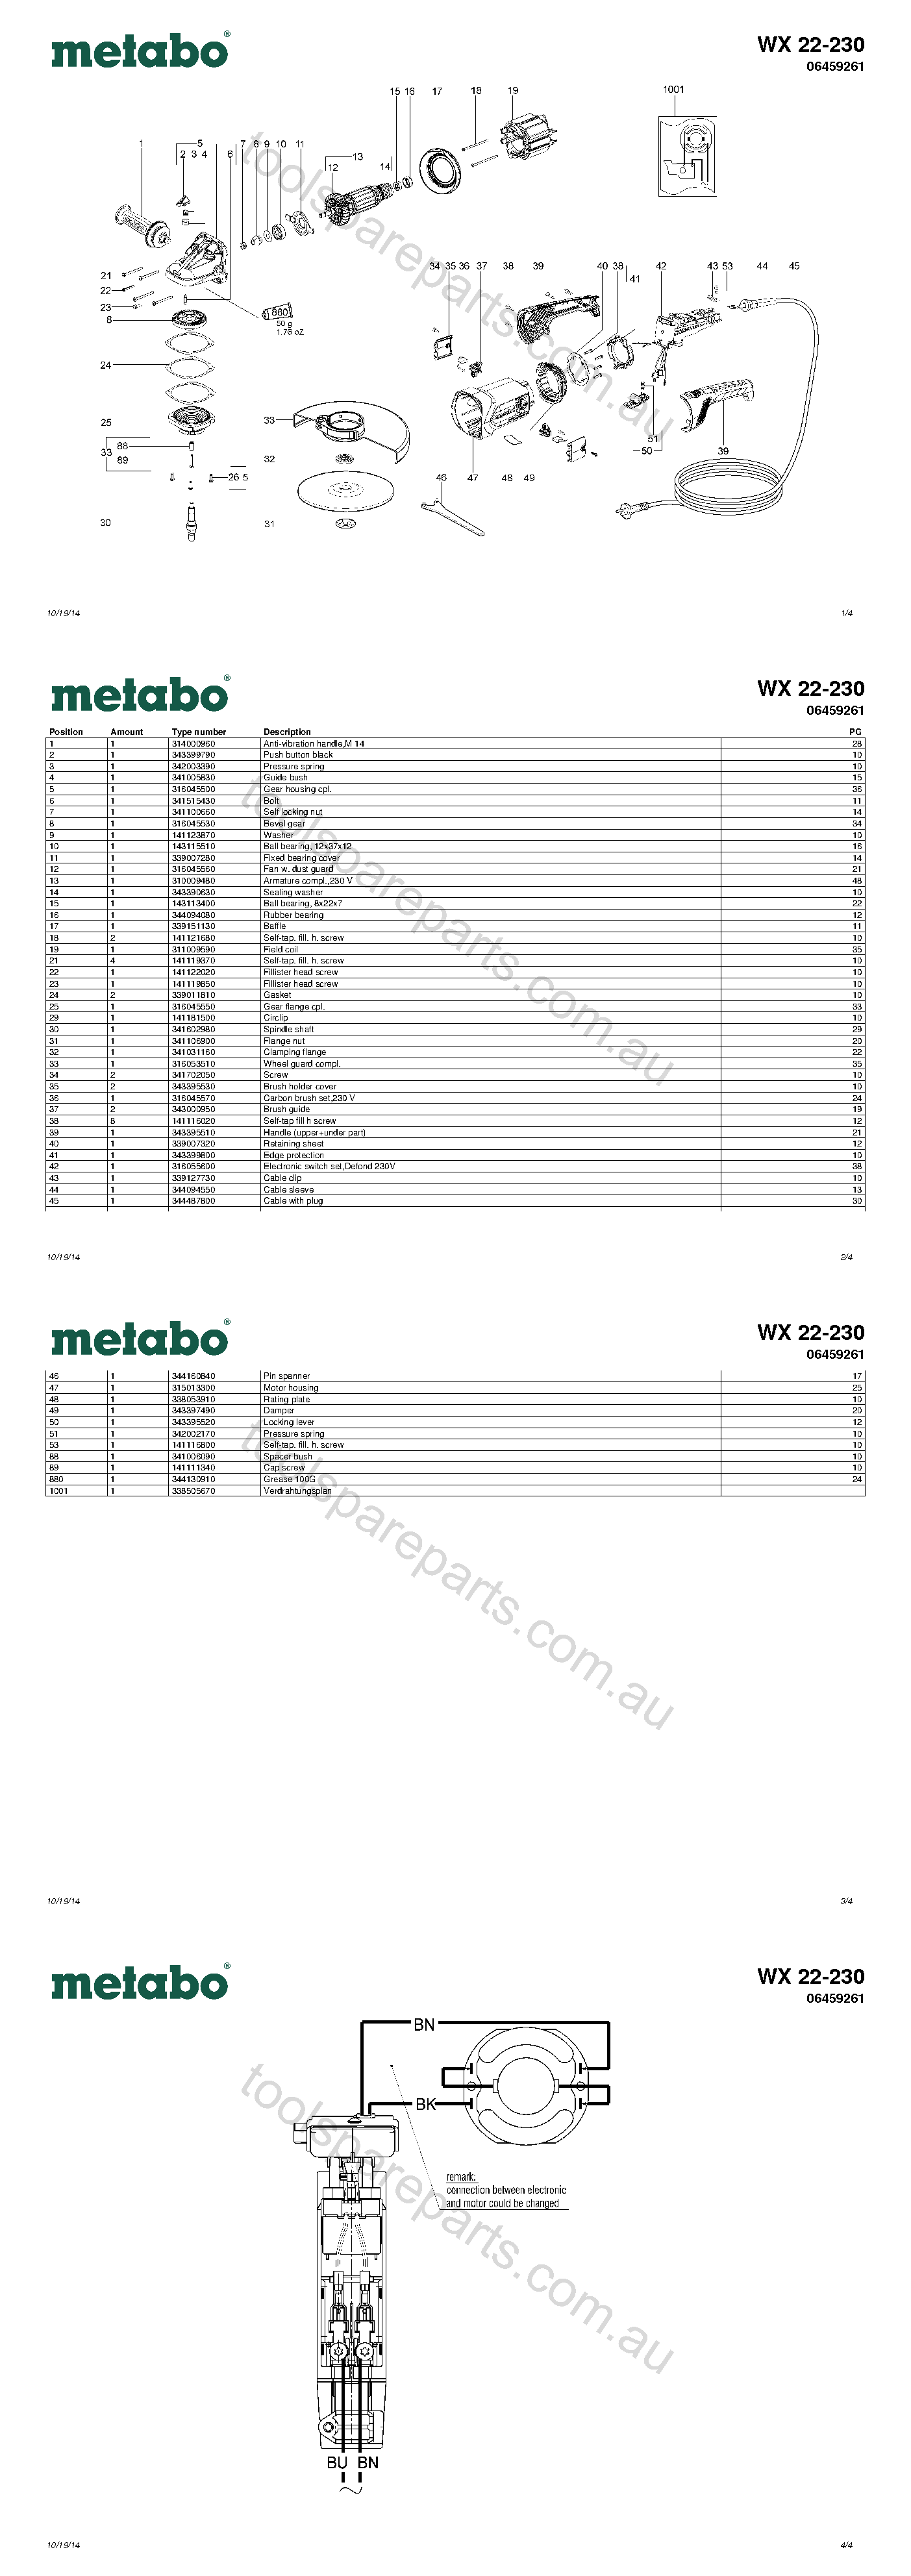 Metabo WX 22-230 06459261  Diagram 1